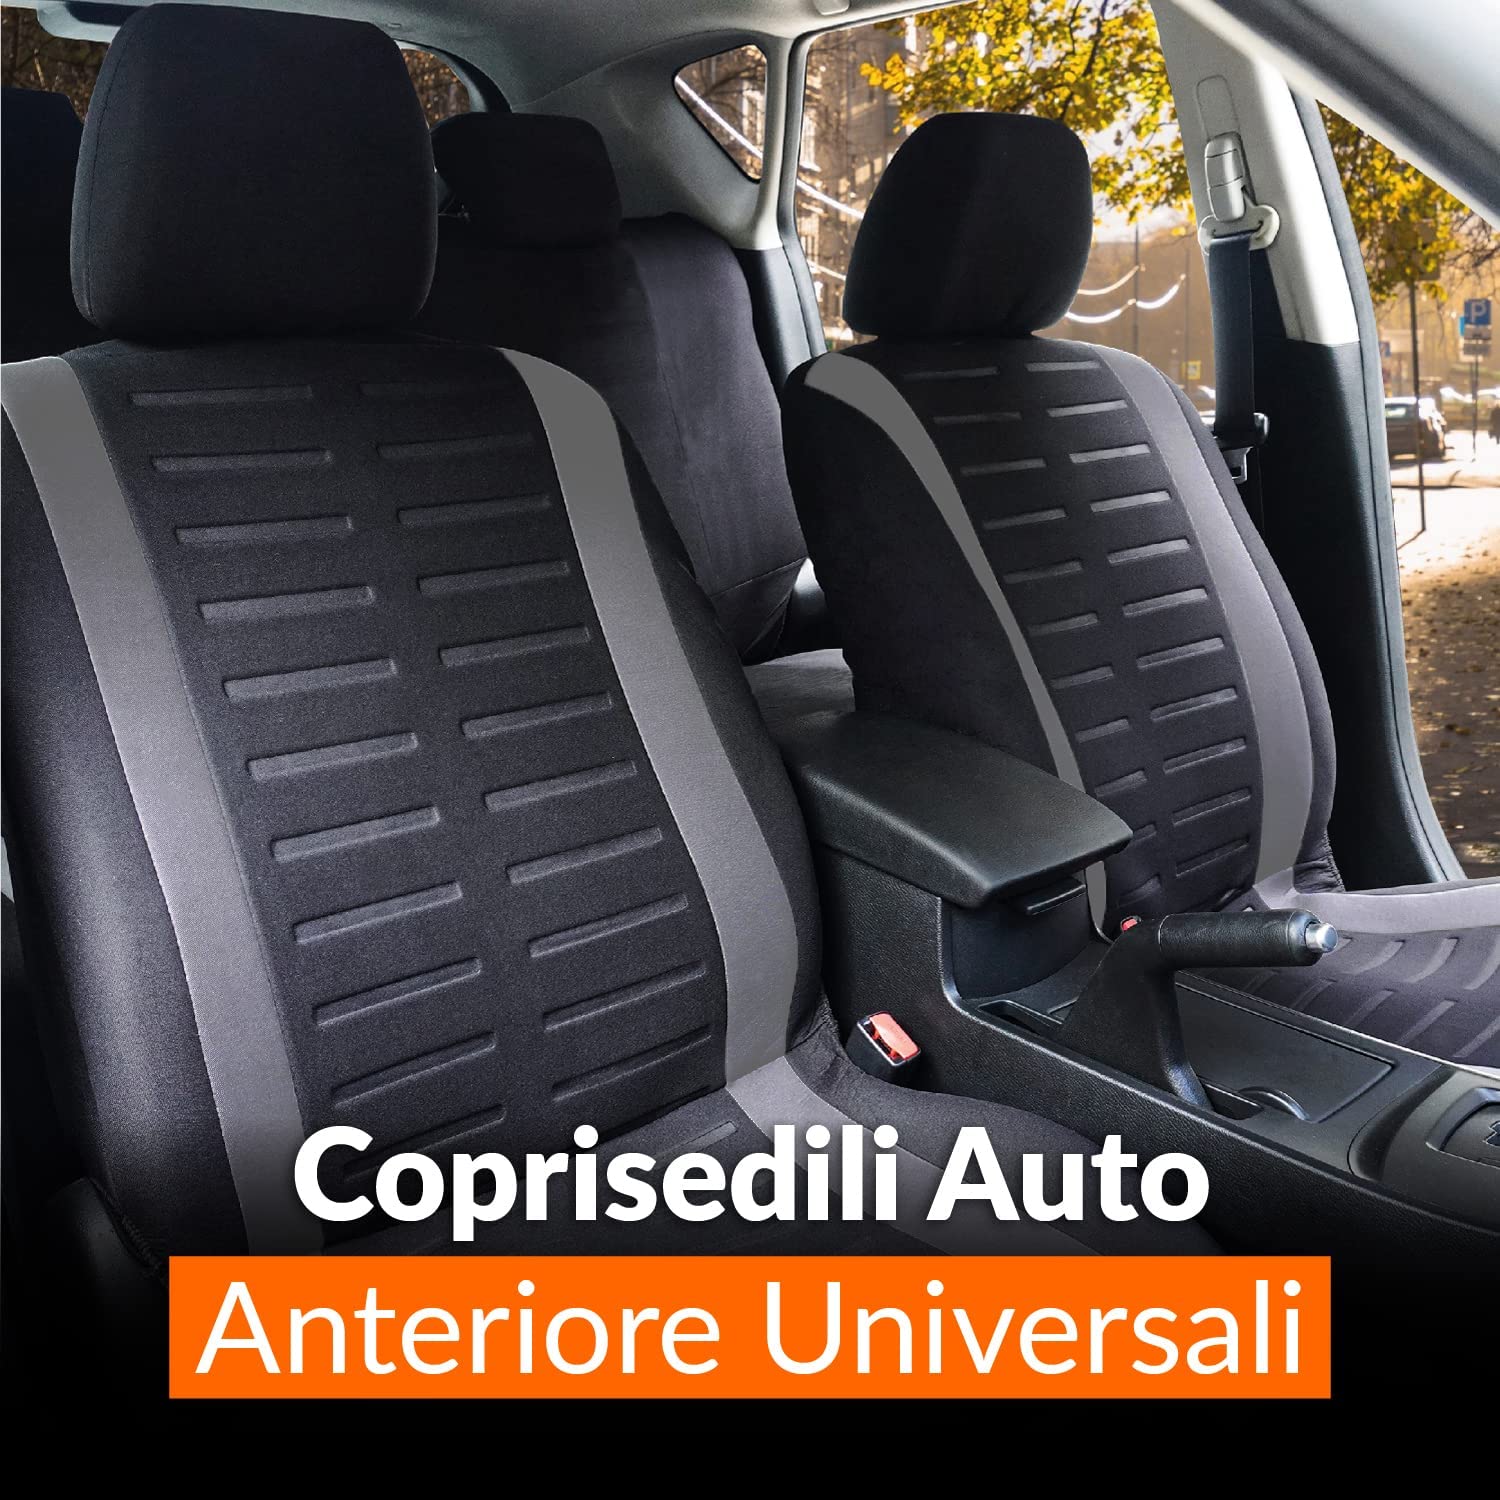 Upgrade4cars Coprisedili Auto Anteriore Universali Nero Blu